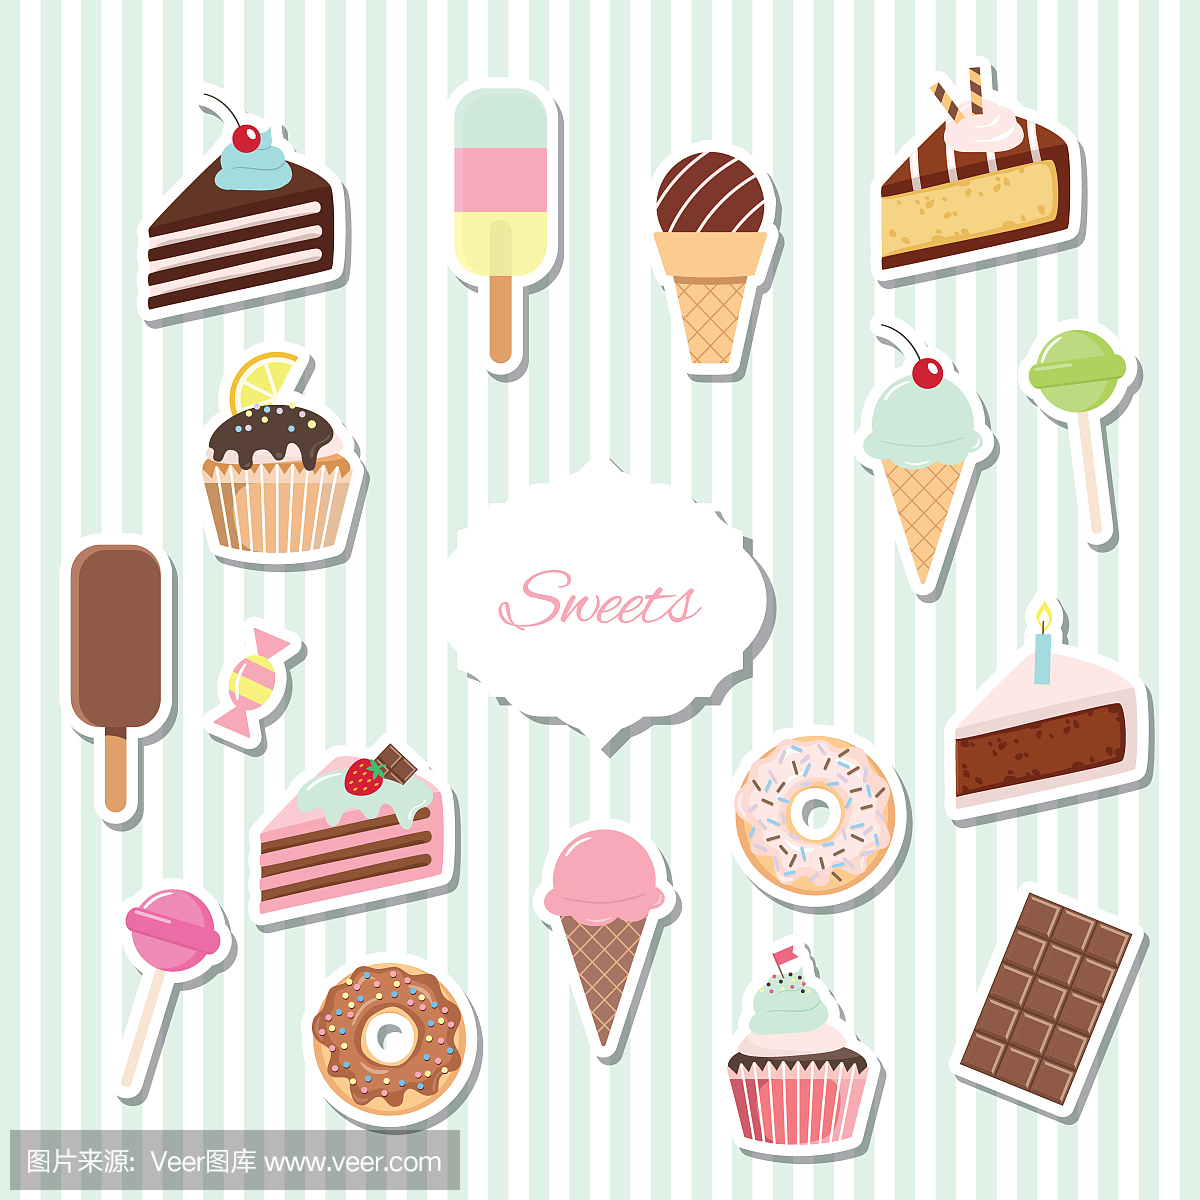 卡通糖果套 - 冰淇淋,甜甜圈,纸杯蛋糕。